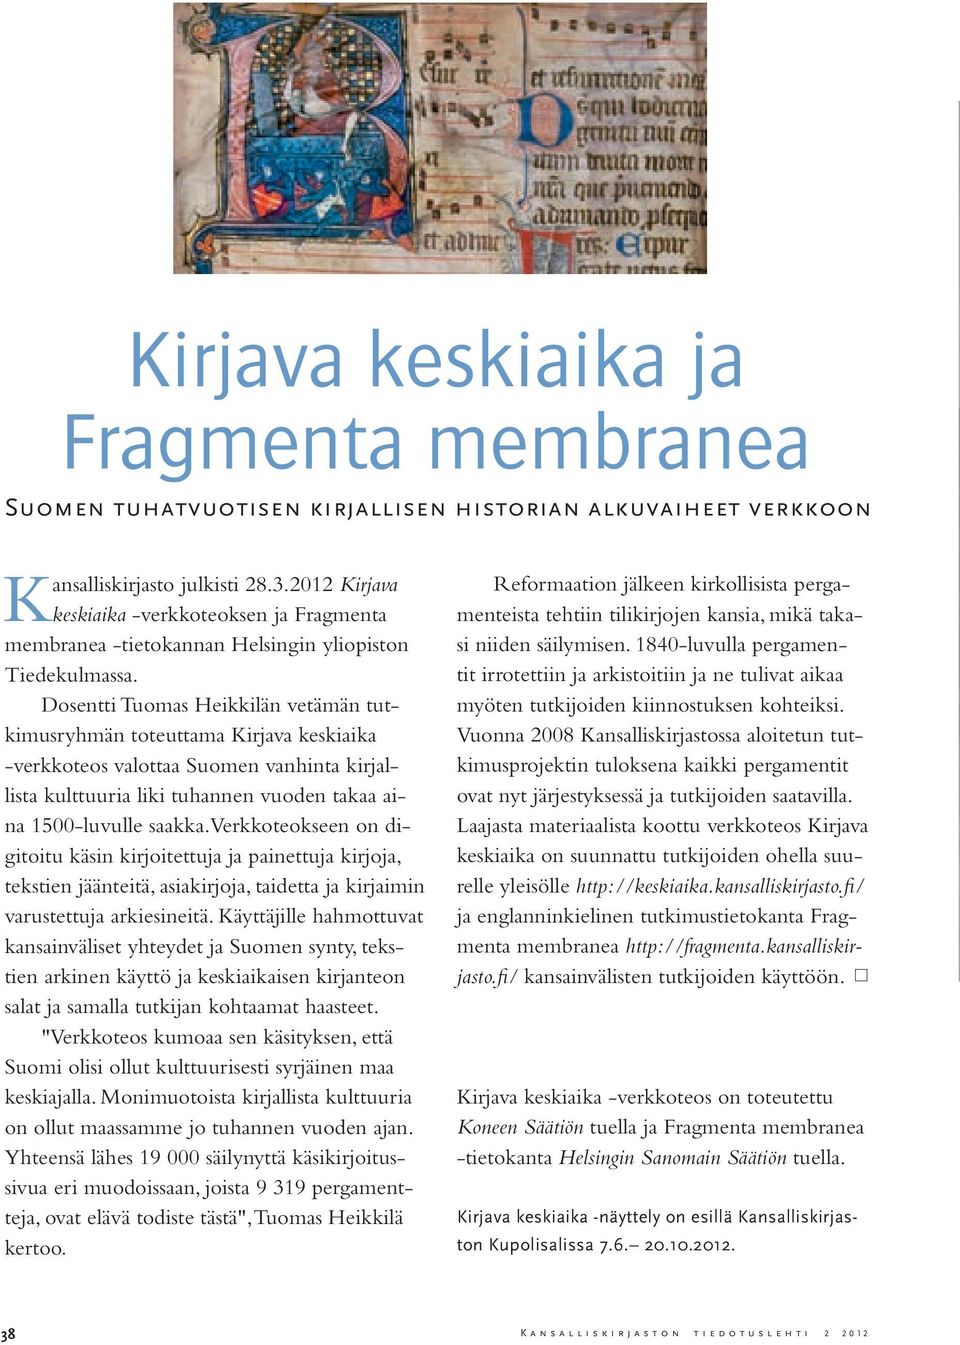 Dosentti Tuomas Heikkilän vetämän tutkimusryhmän toteuttama Kirjava keskiaika -verkkoteos valottaa Suomen vanhinta kirjallista kulttuuria liki tuhannen vuoden takaa aina 1500-luvulle saakka.